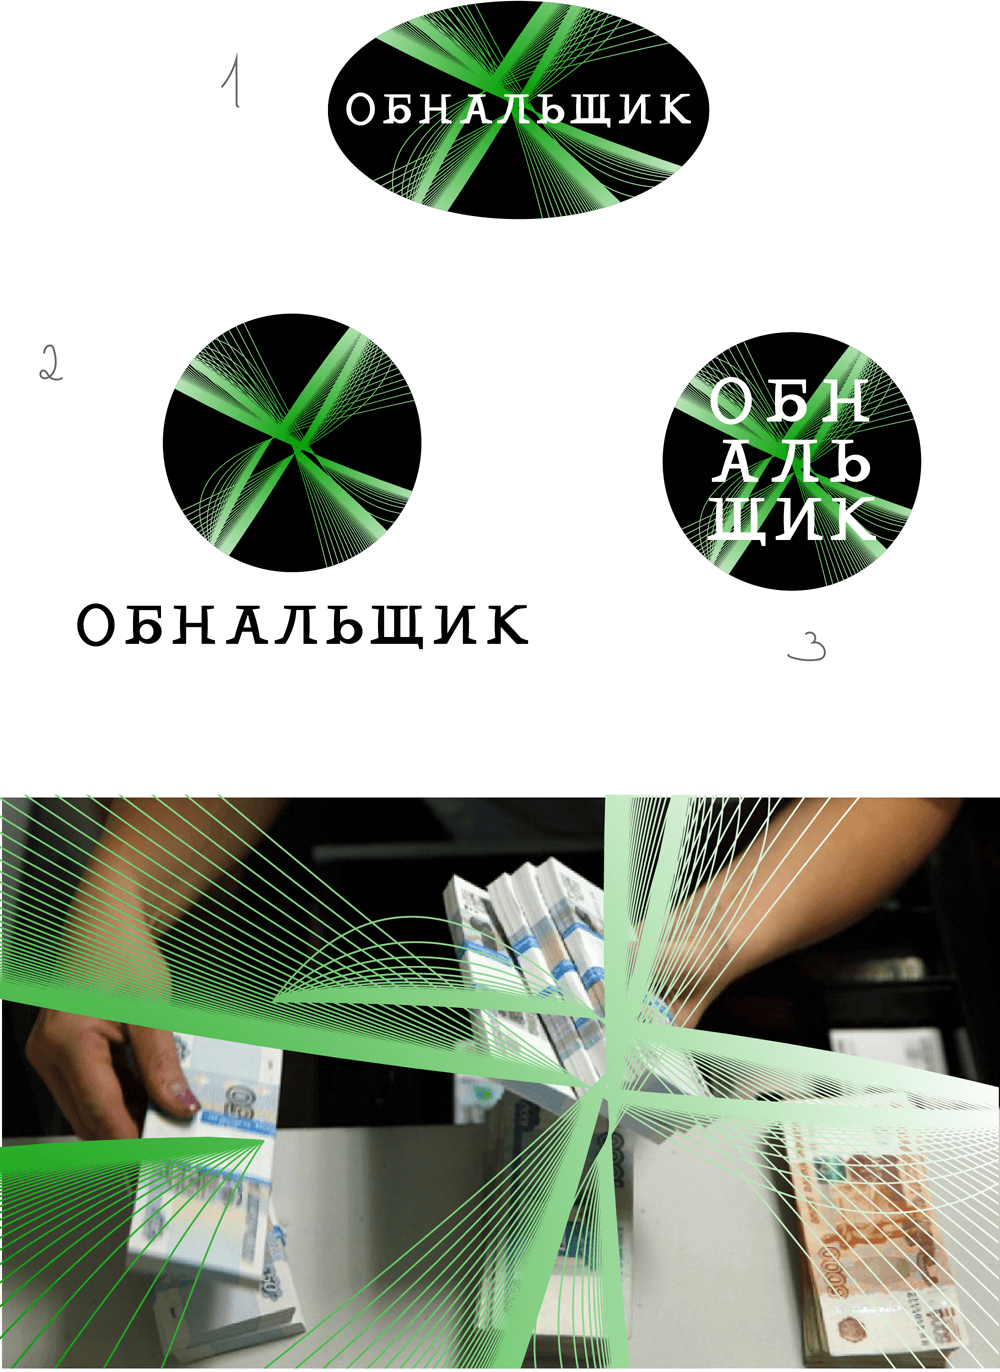 obnalshik process 05